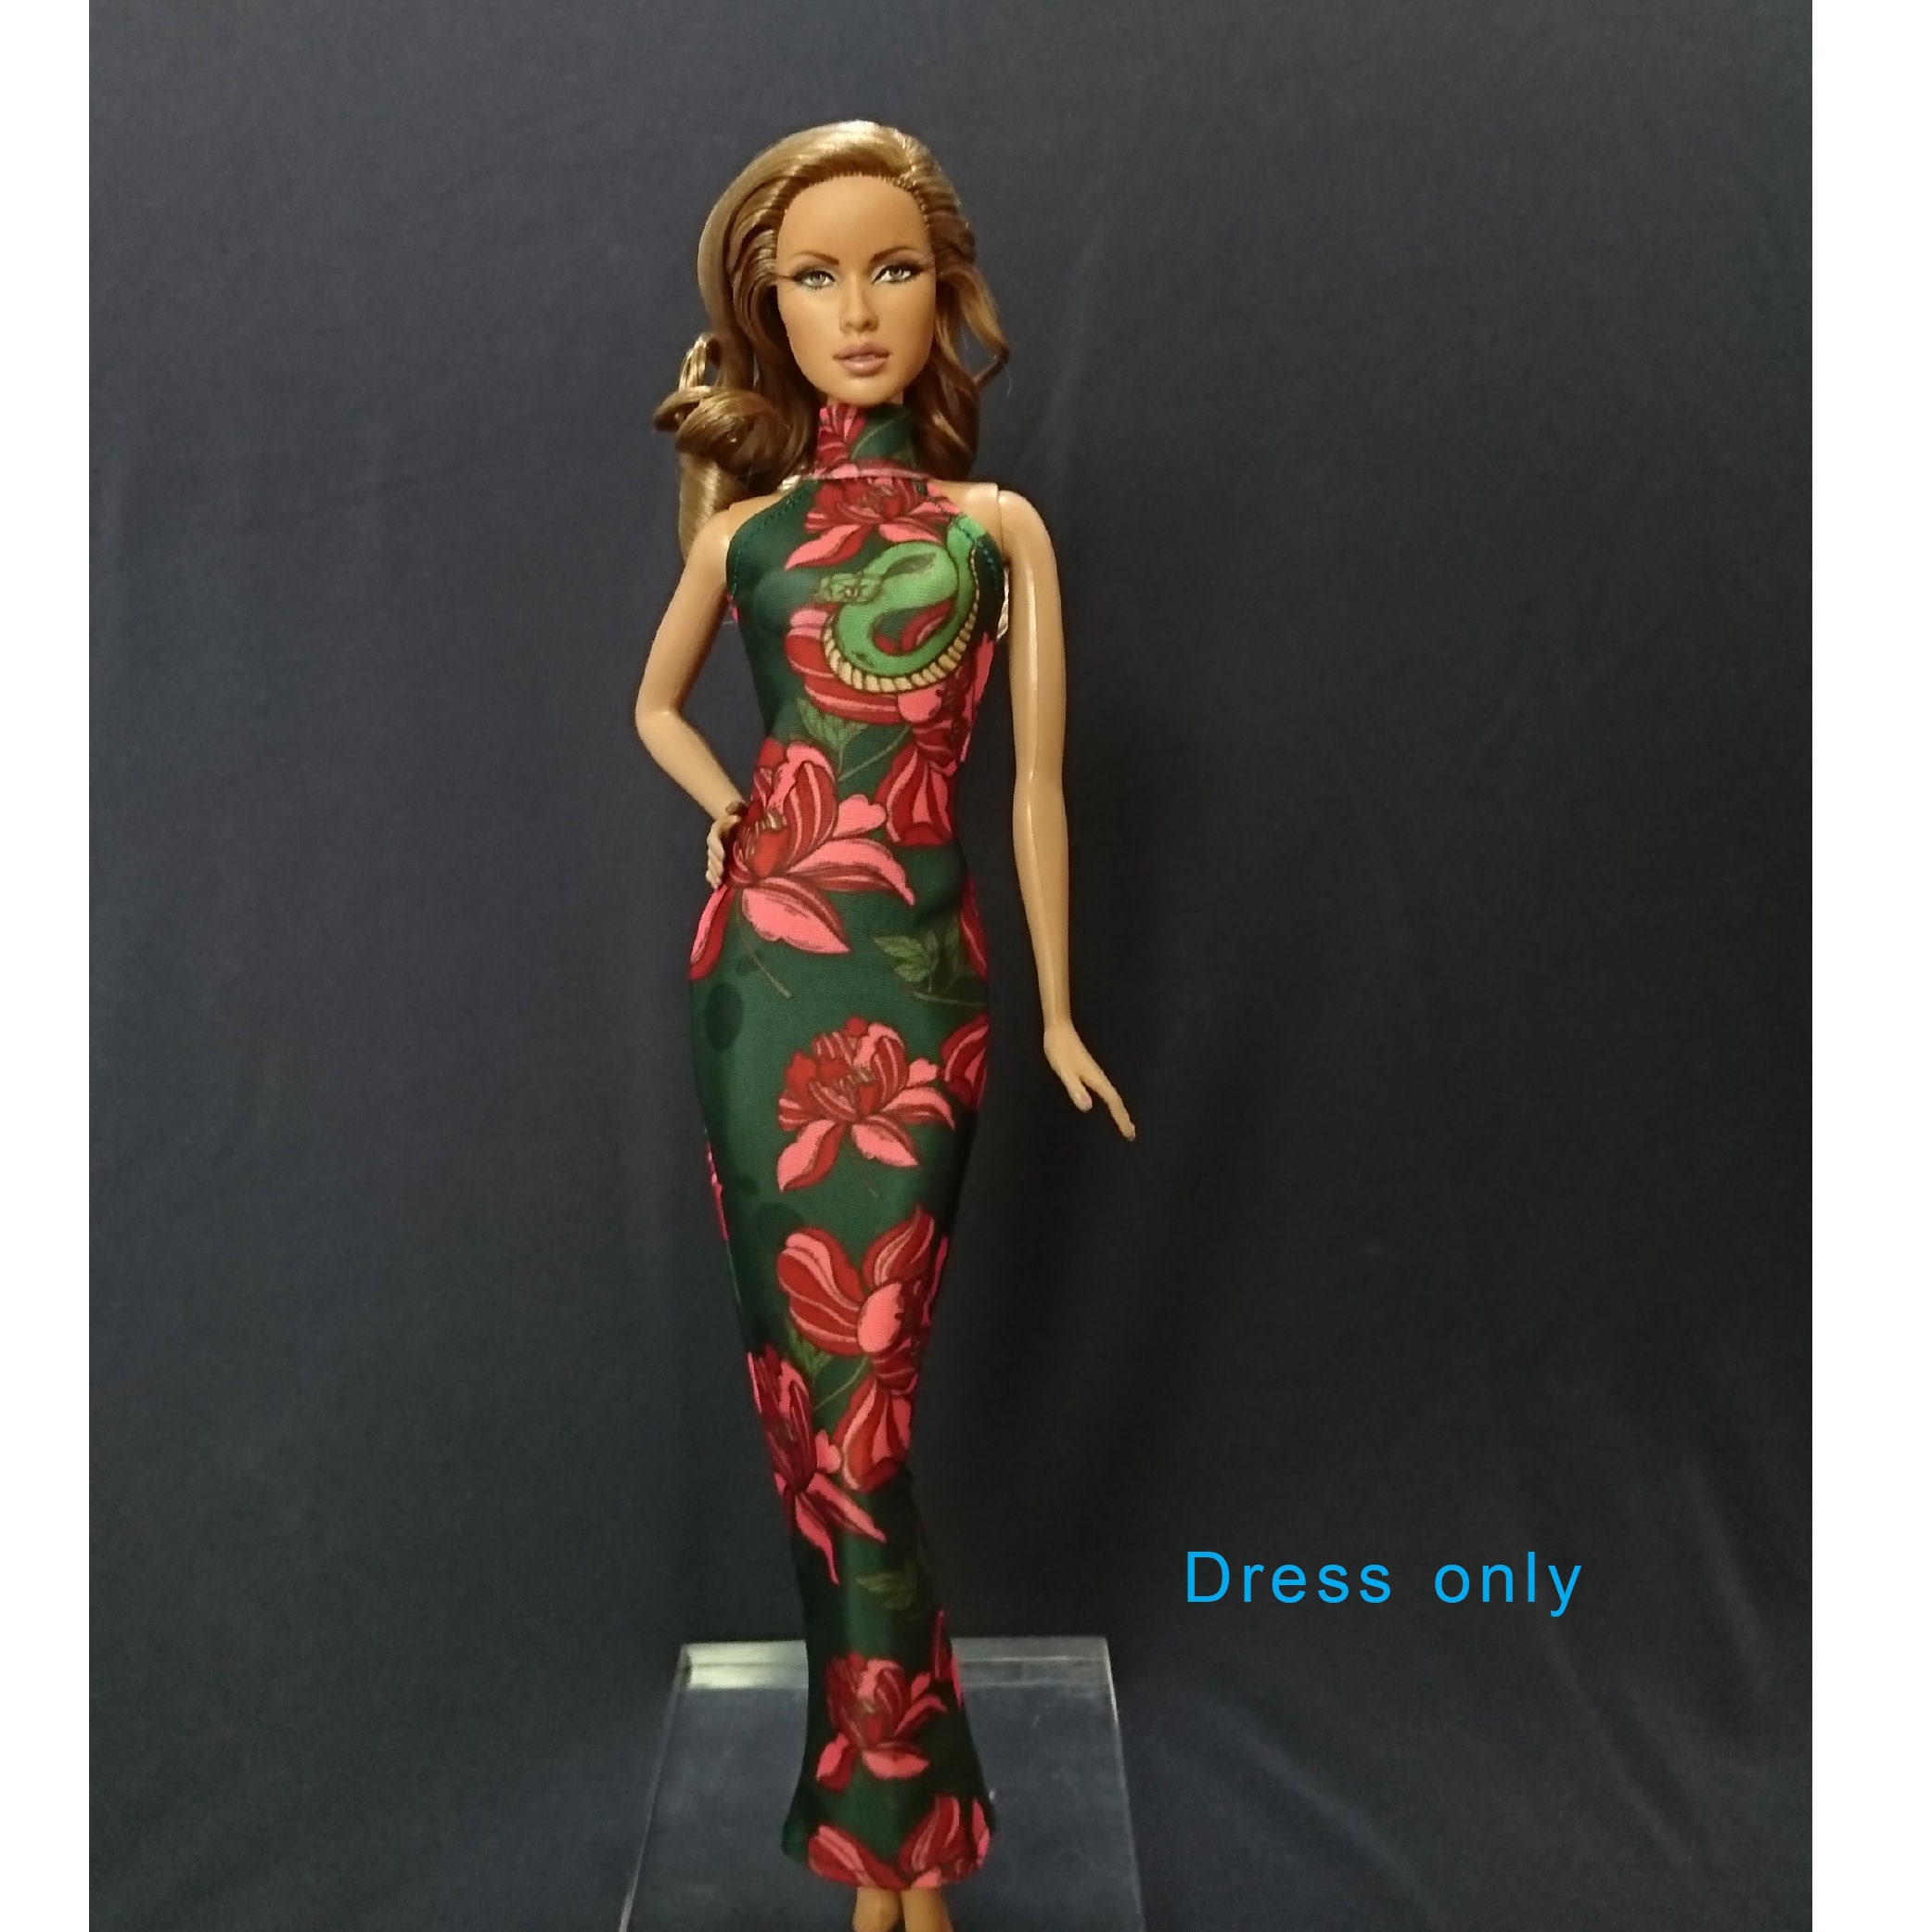 Fashion Royalty Handmade~Doll dress for 12" Doll~ Barbie Silkstone 